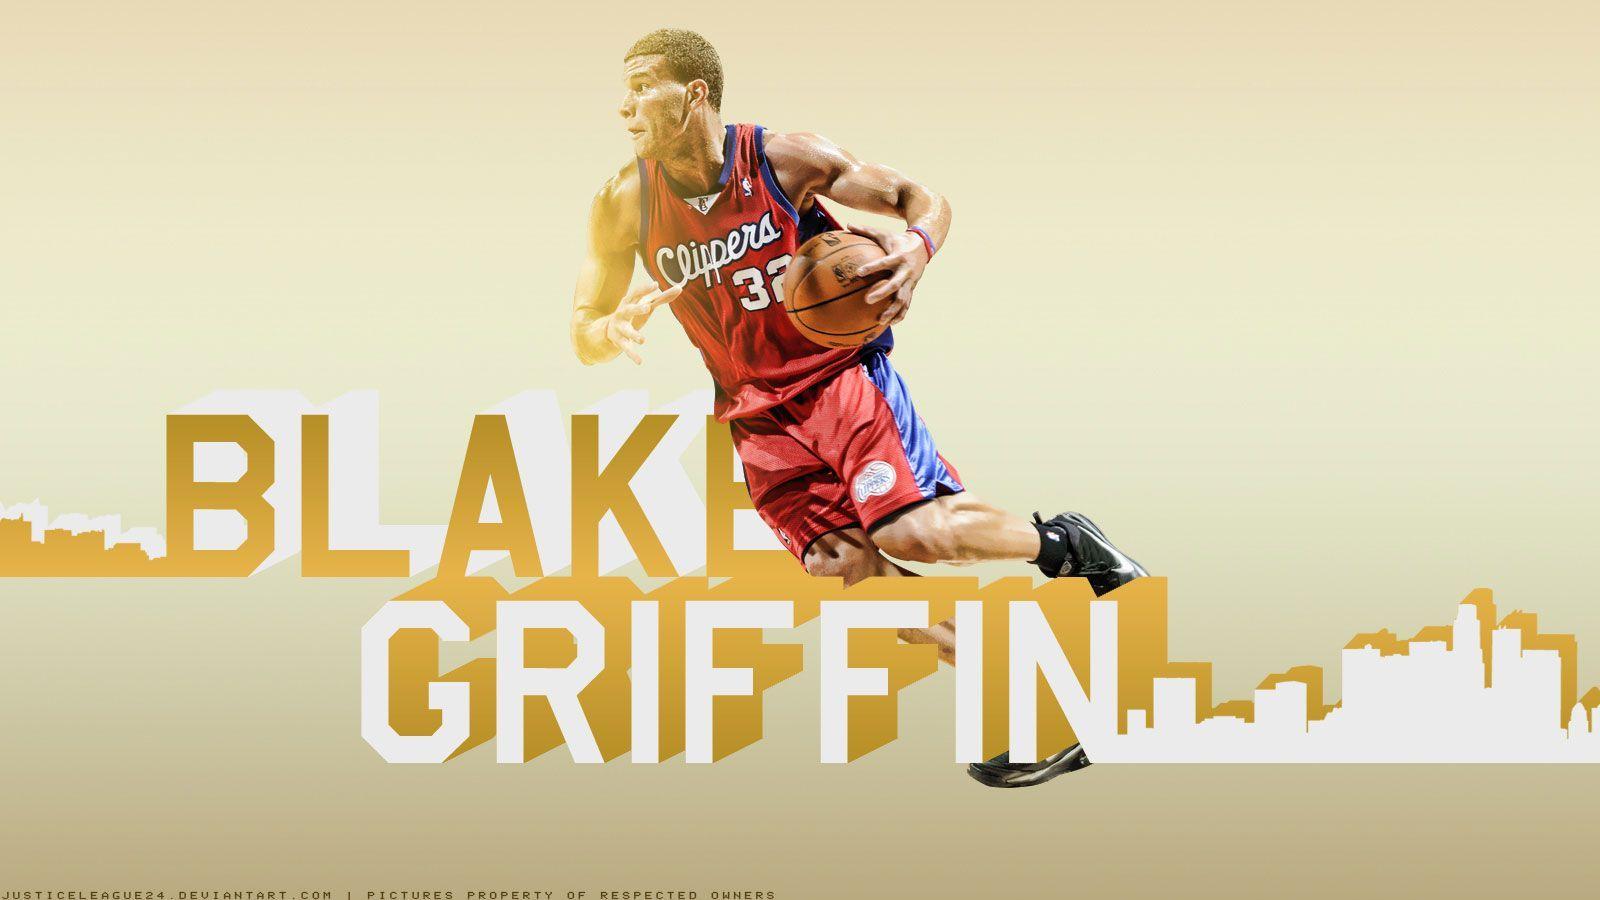 Blake Griffin Wallpaper at BasketWallpaper